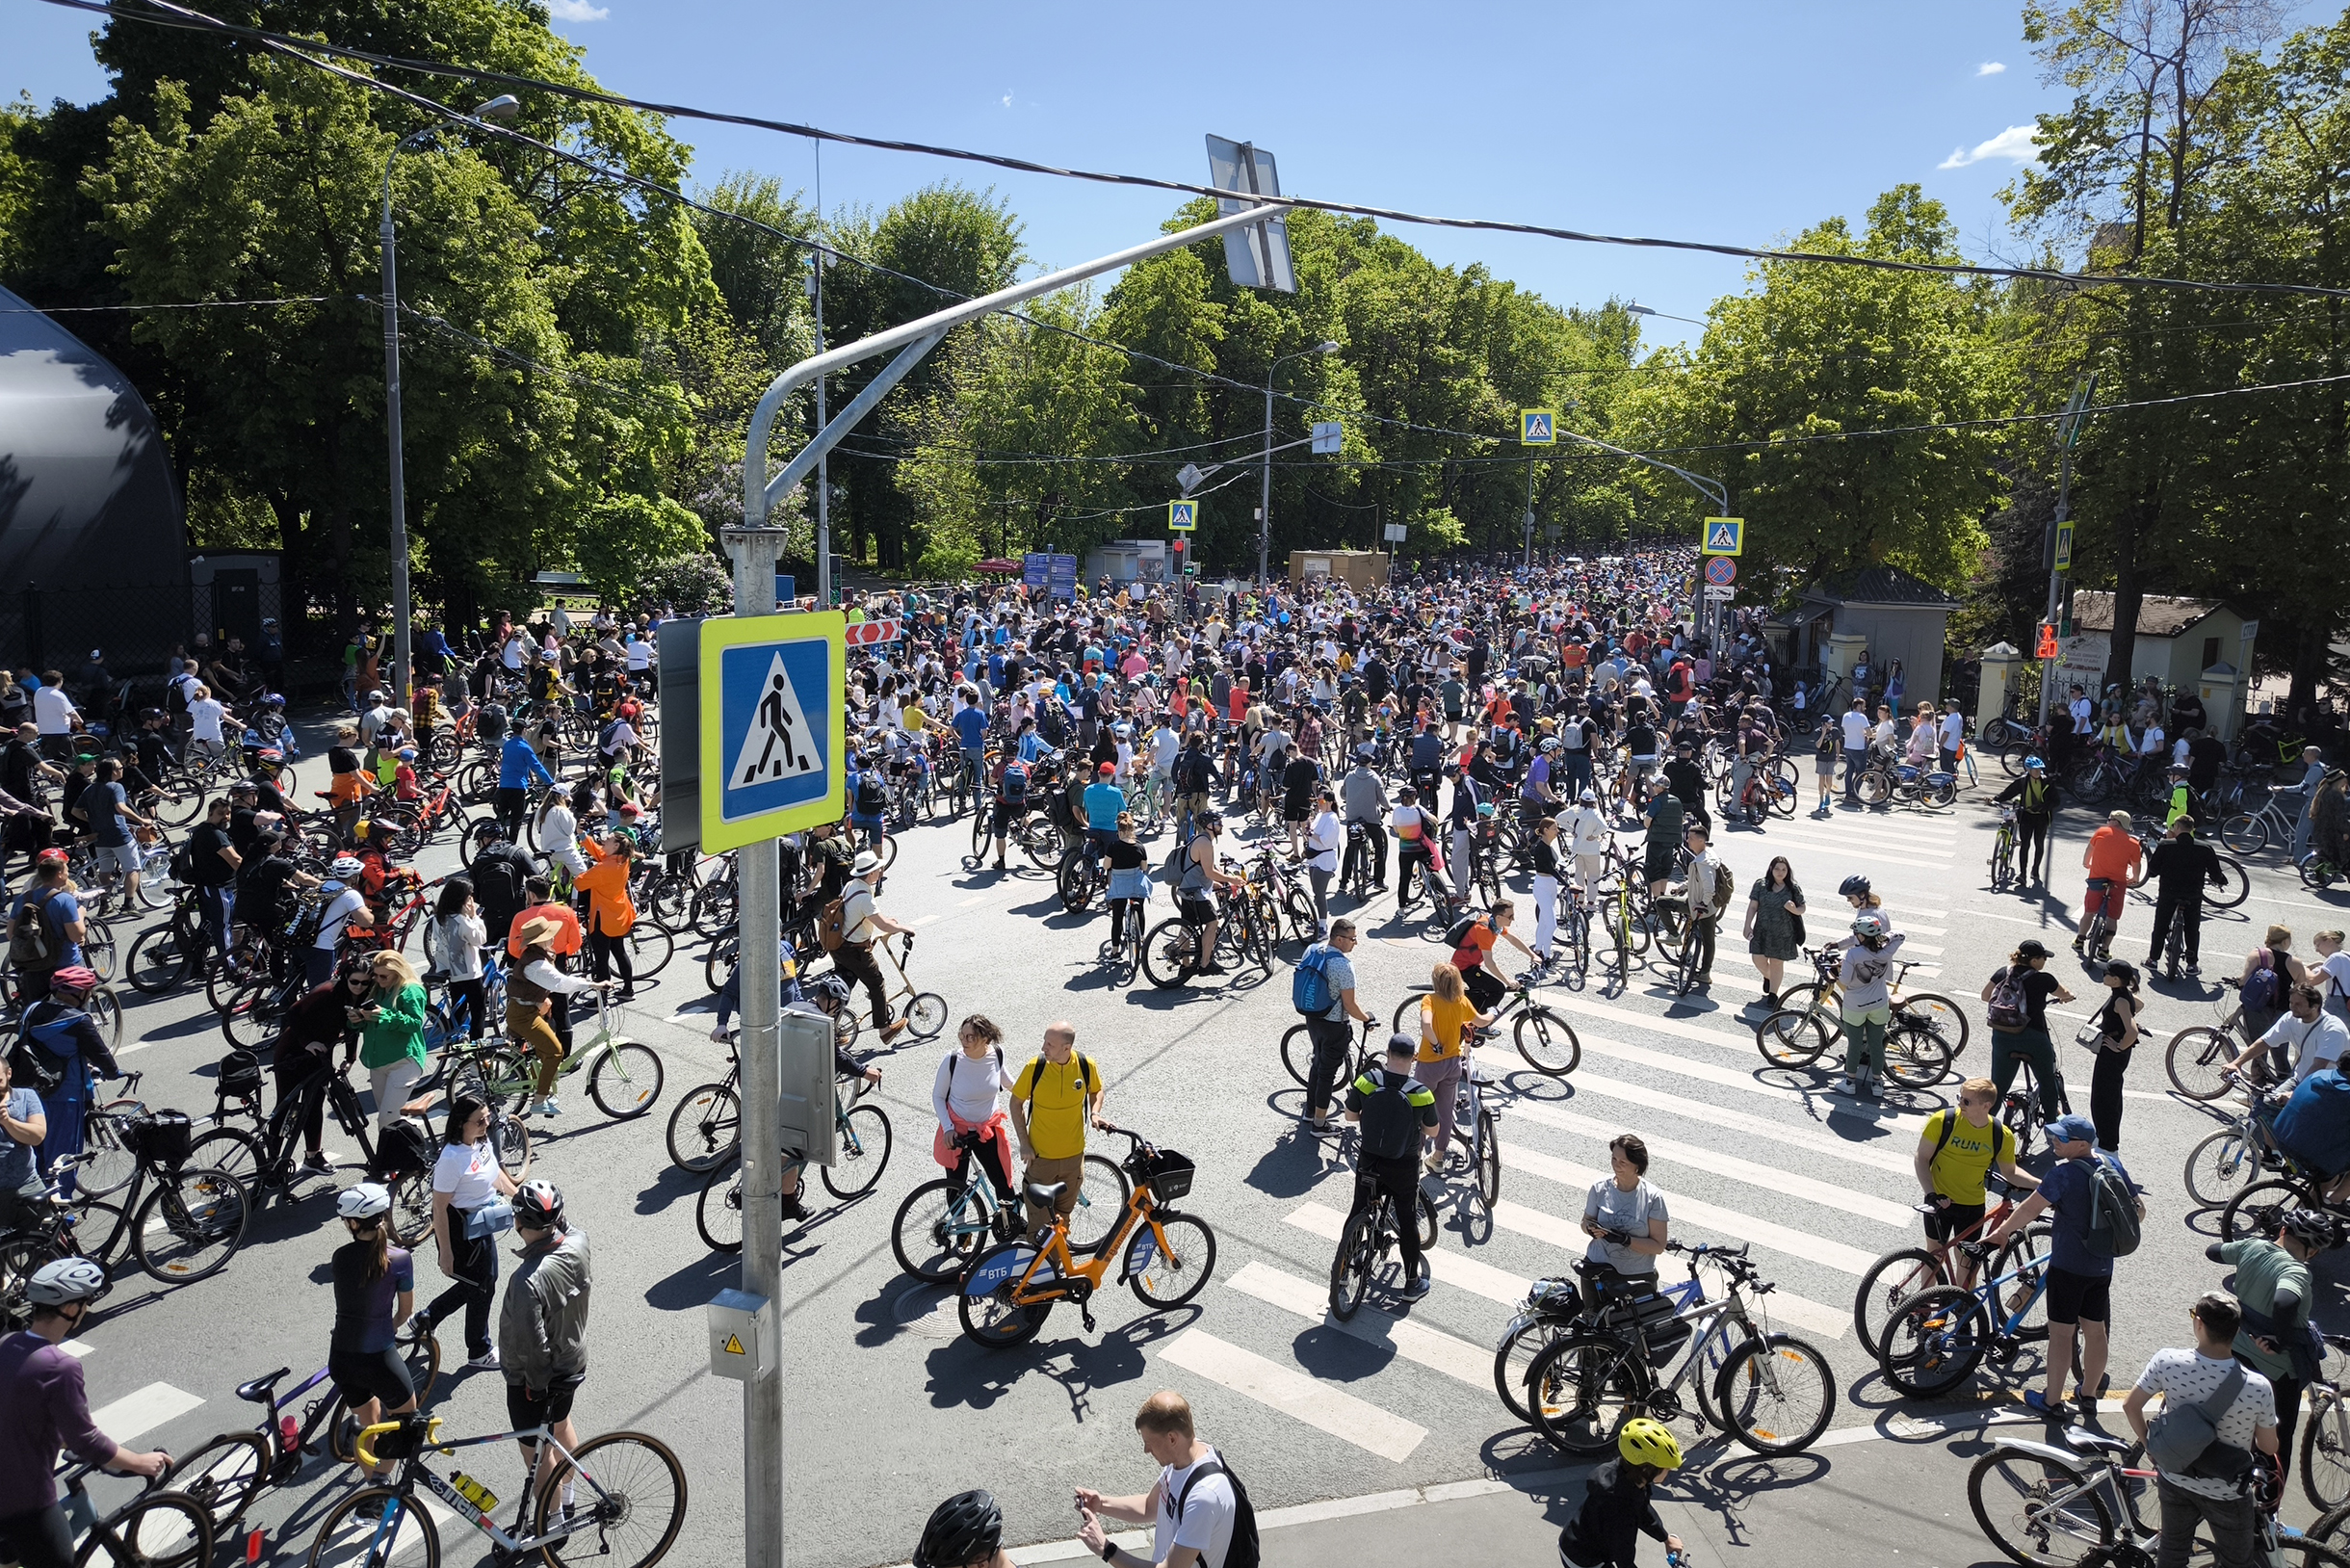 Начало велозаезда было запланировано на 13:00. На фото Большая Пироговская улица. Скоро этот участок заполнится людьми и отсюда будет не выйти